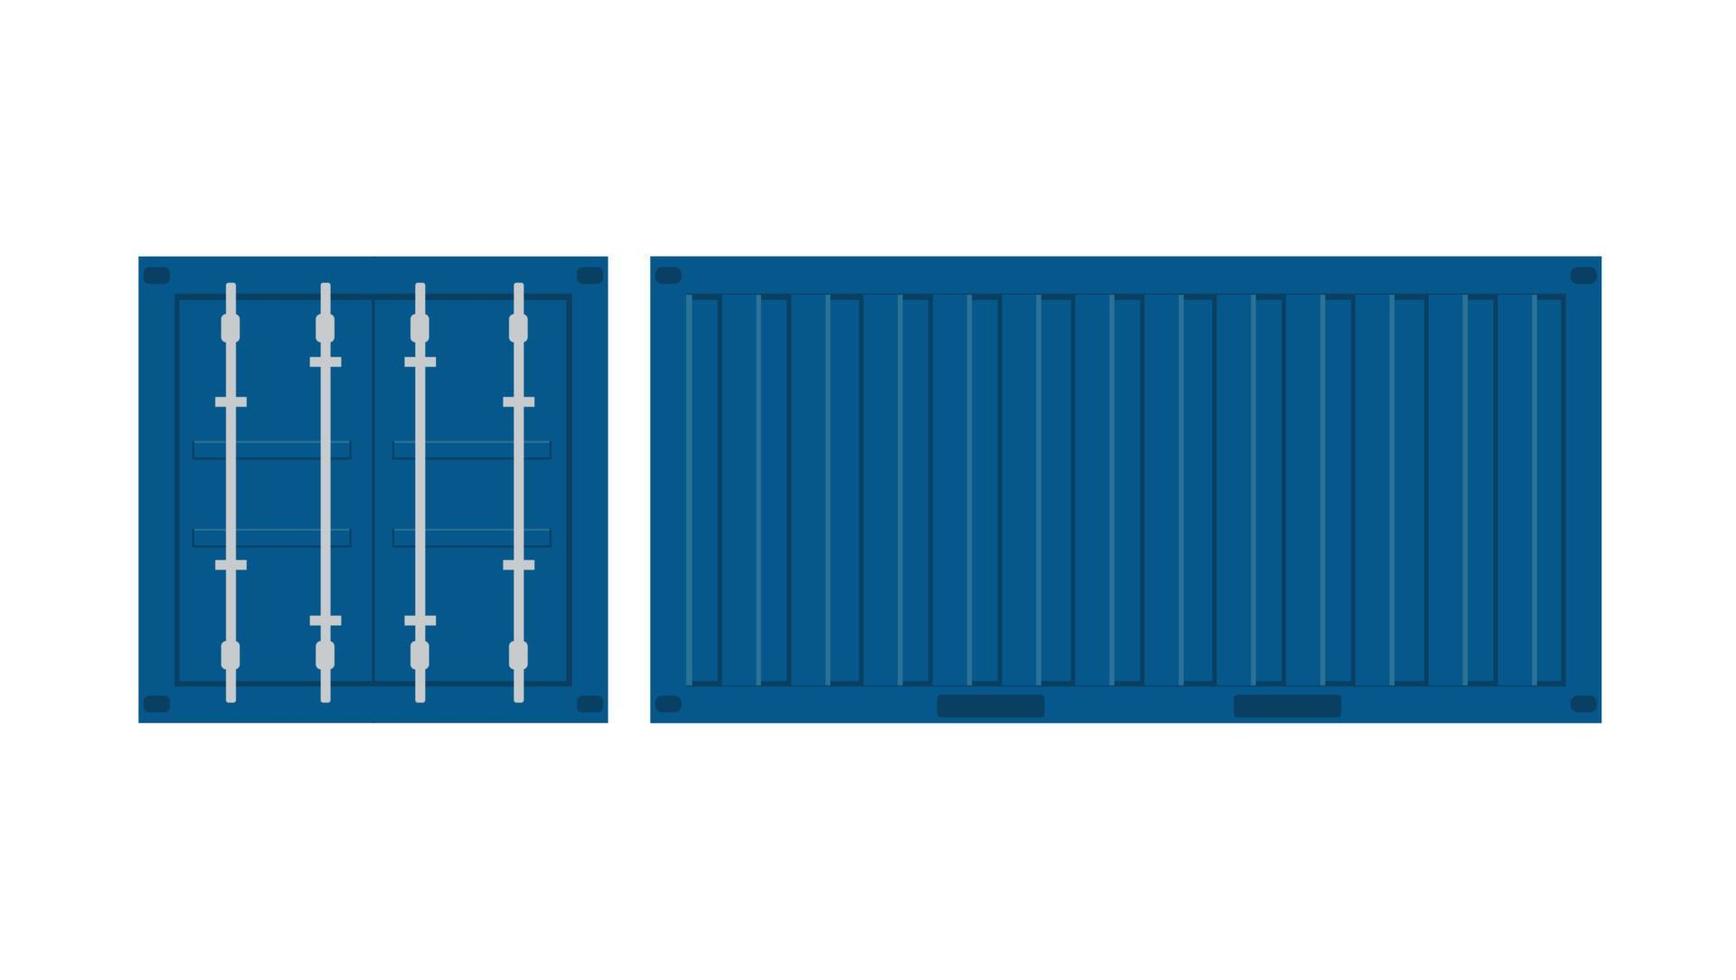 realistisk 3d-uppsättning av blå lastcontainrar. vektor illustration